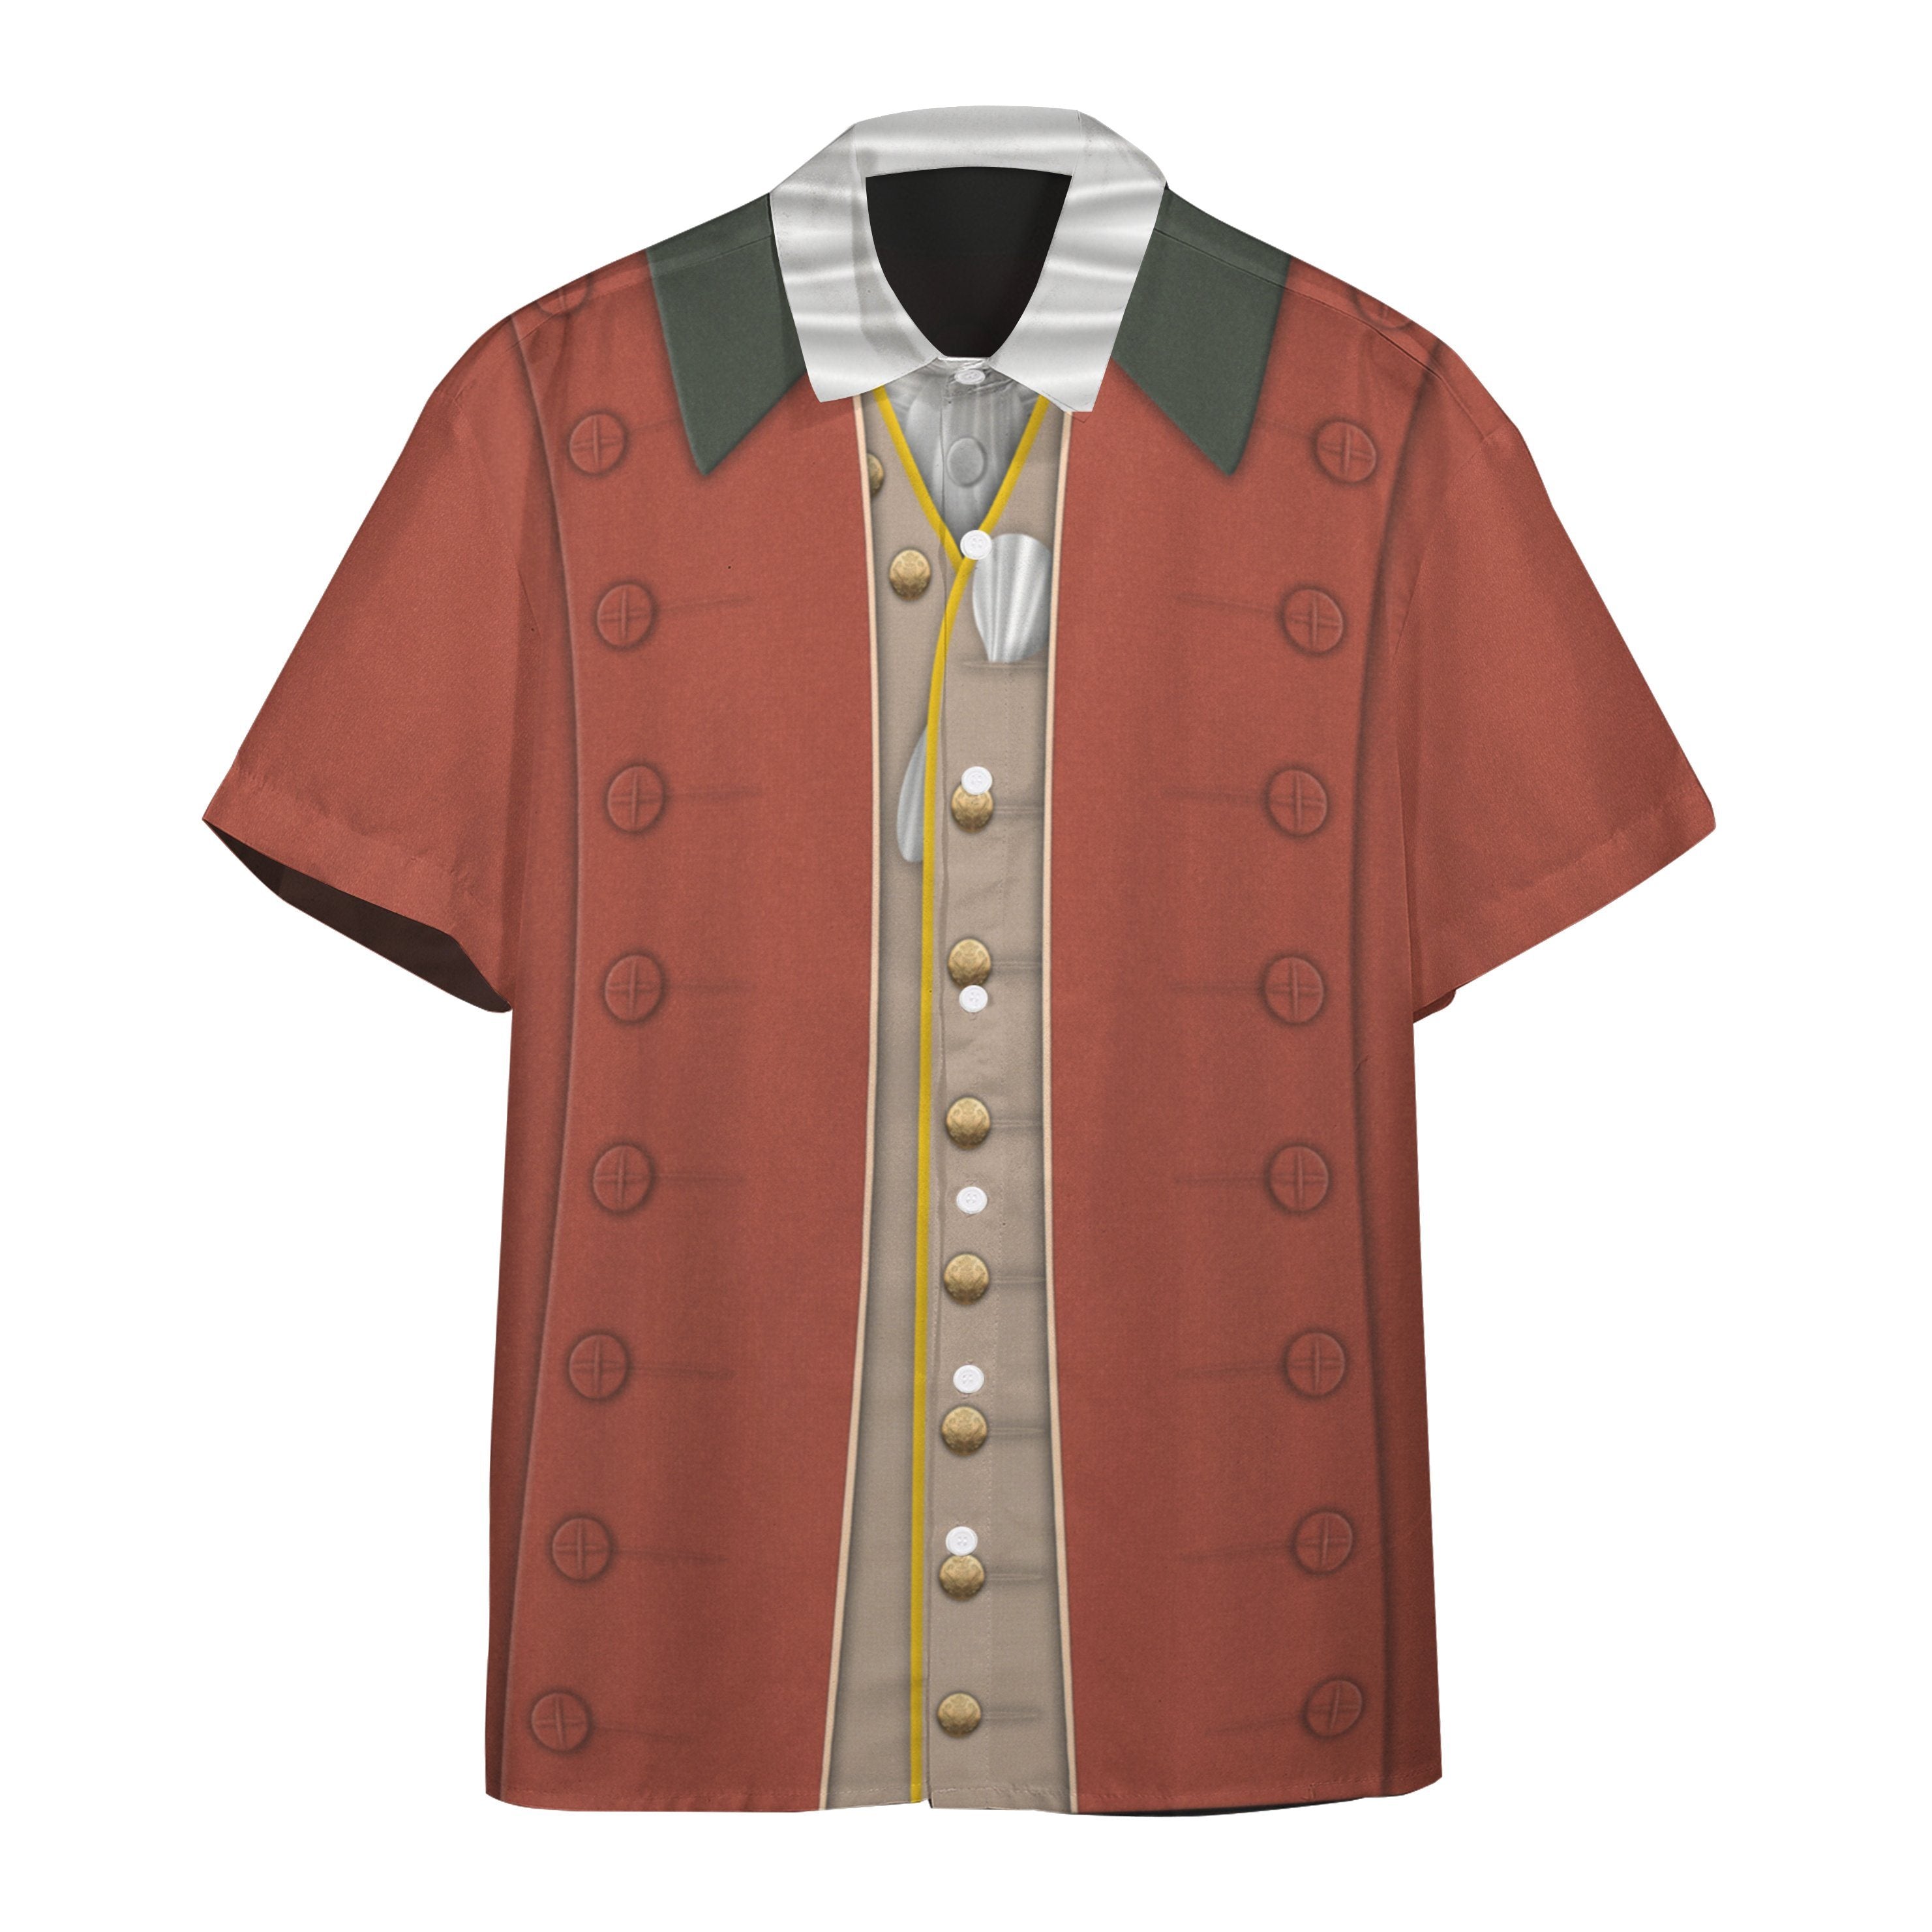 George Washington Custom Short Sleeve Shirt